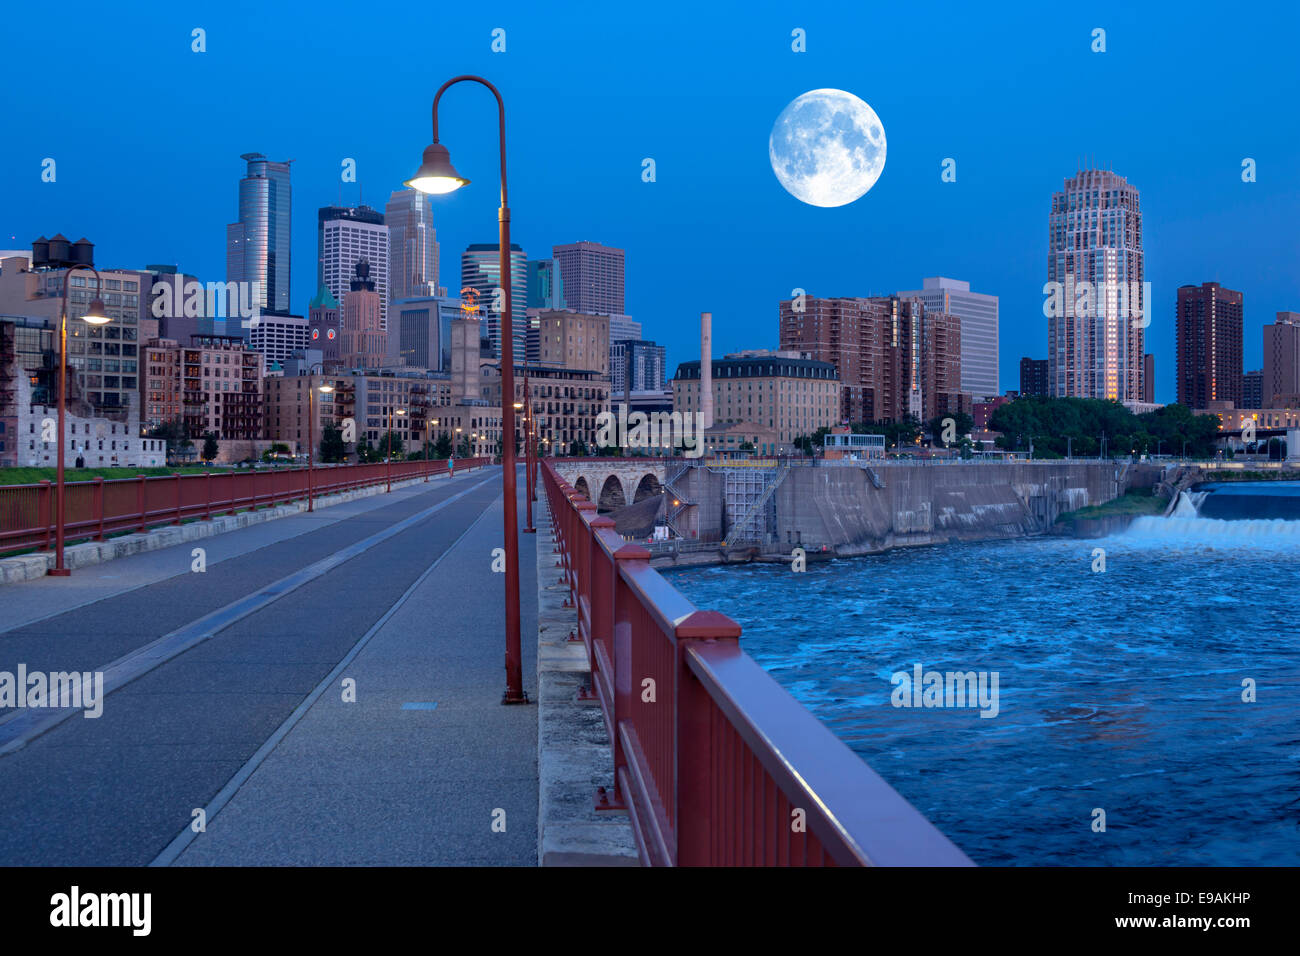 Puente en arco de piedra de río Mississippi de Minneapolis, Minnesota, EE.UU. Foto de stock